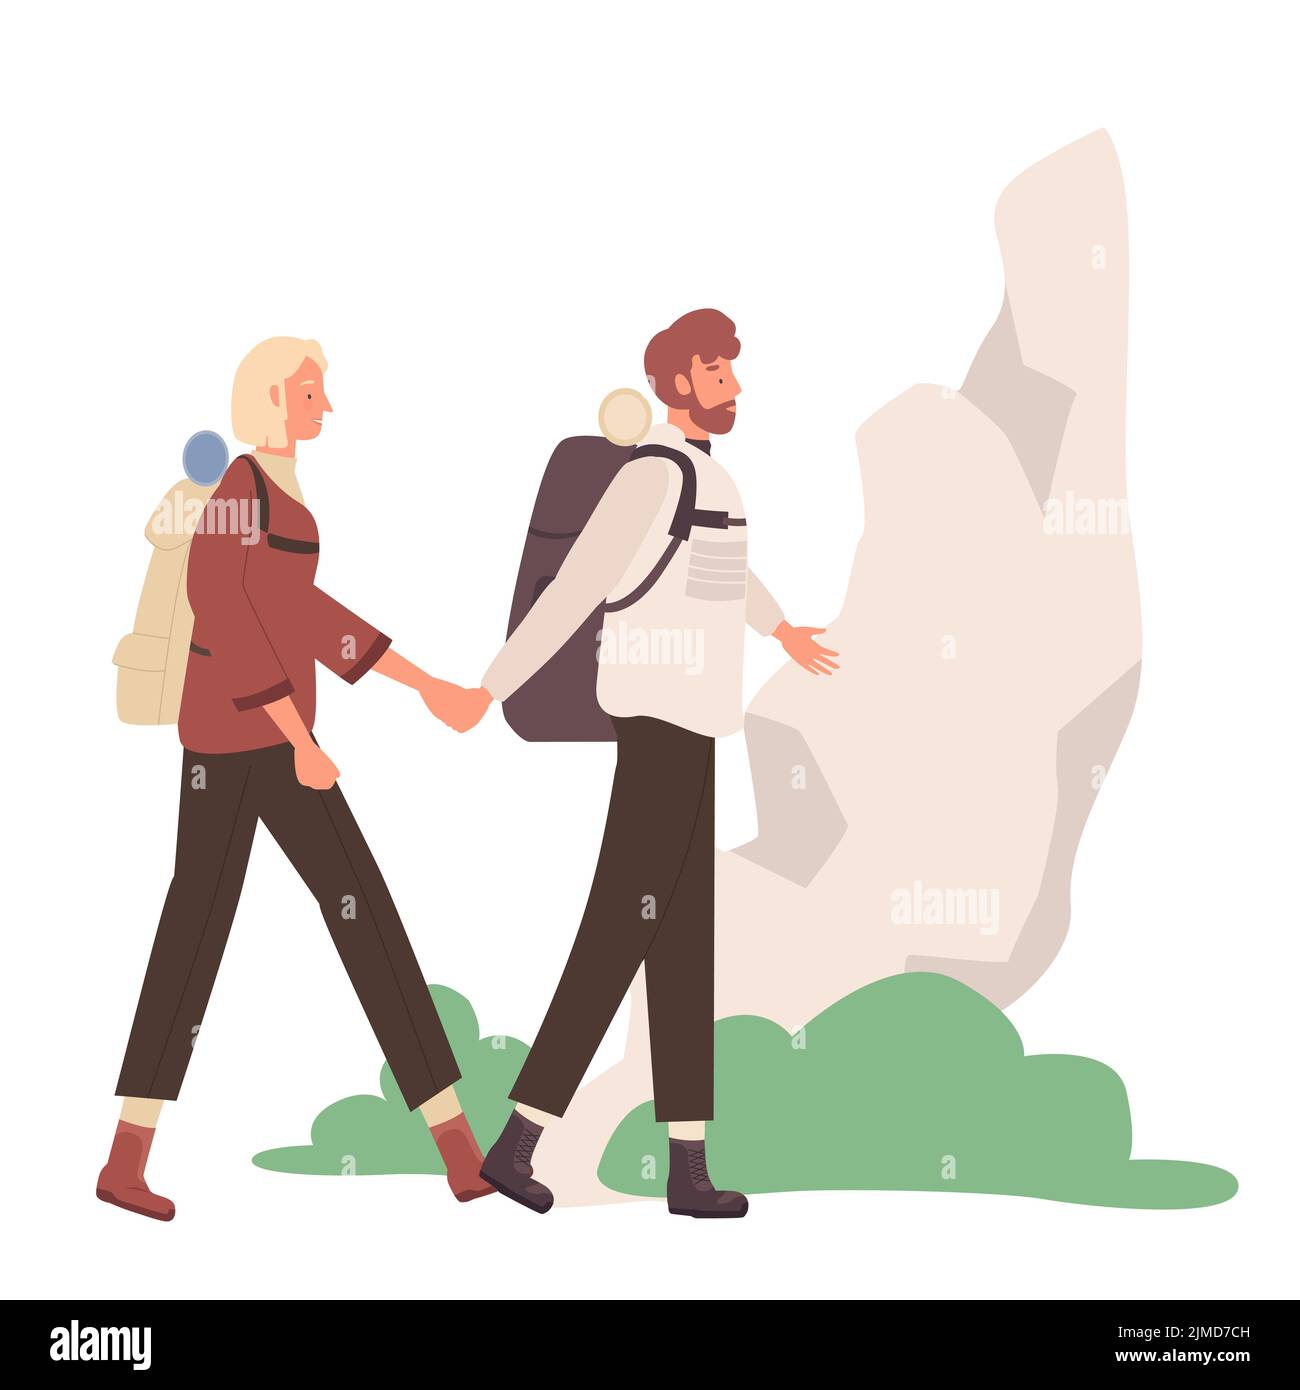 Los turistas que caminan se unen con mochilas. Equipo de viaje, ilustración de vector de aventura de viajero Ilustración del Vector